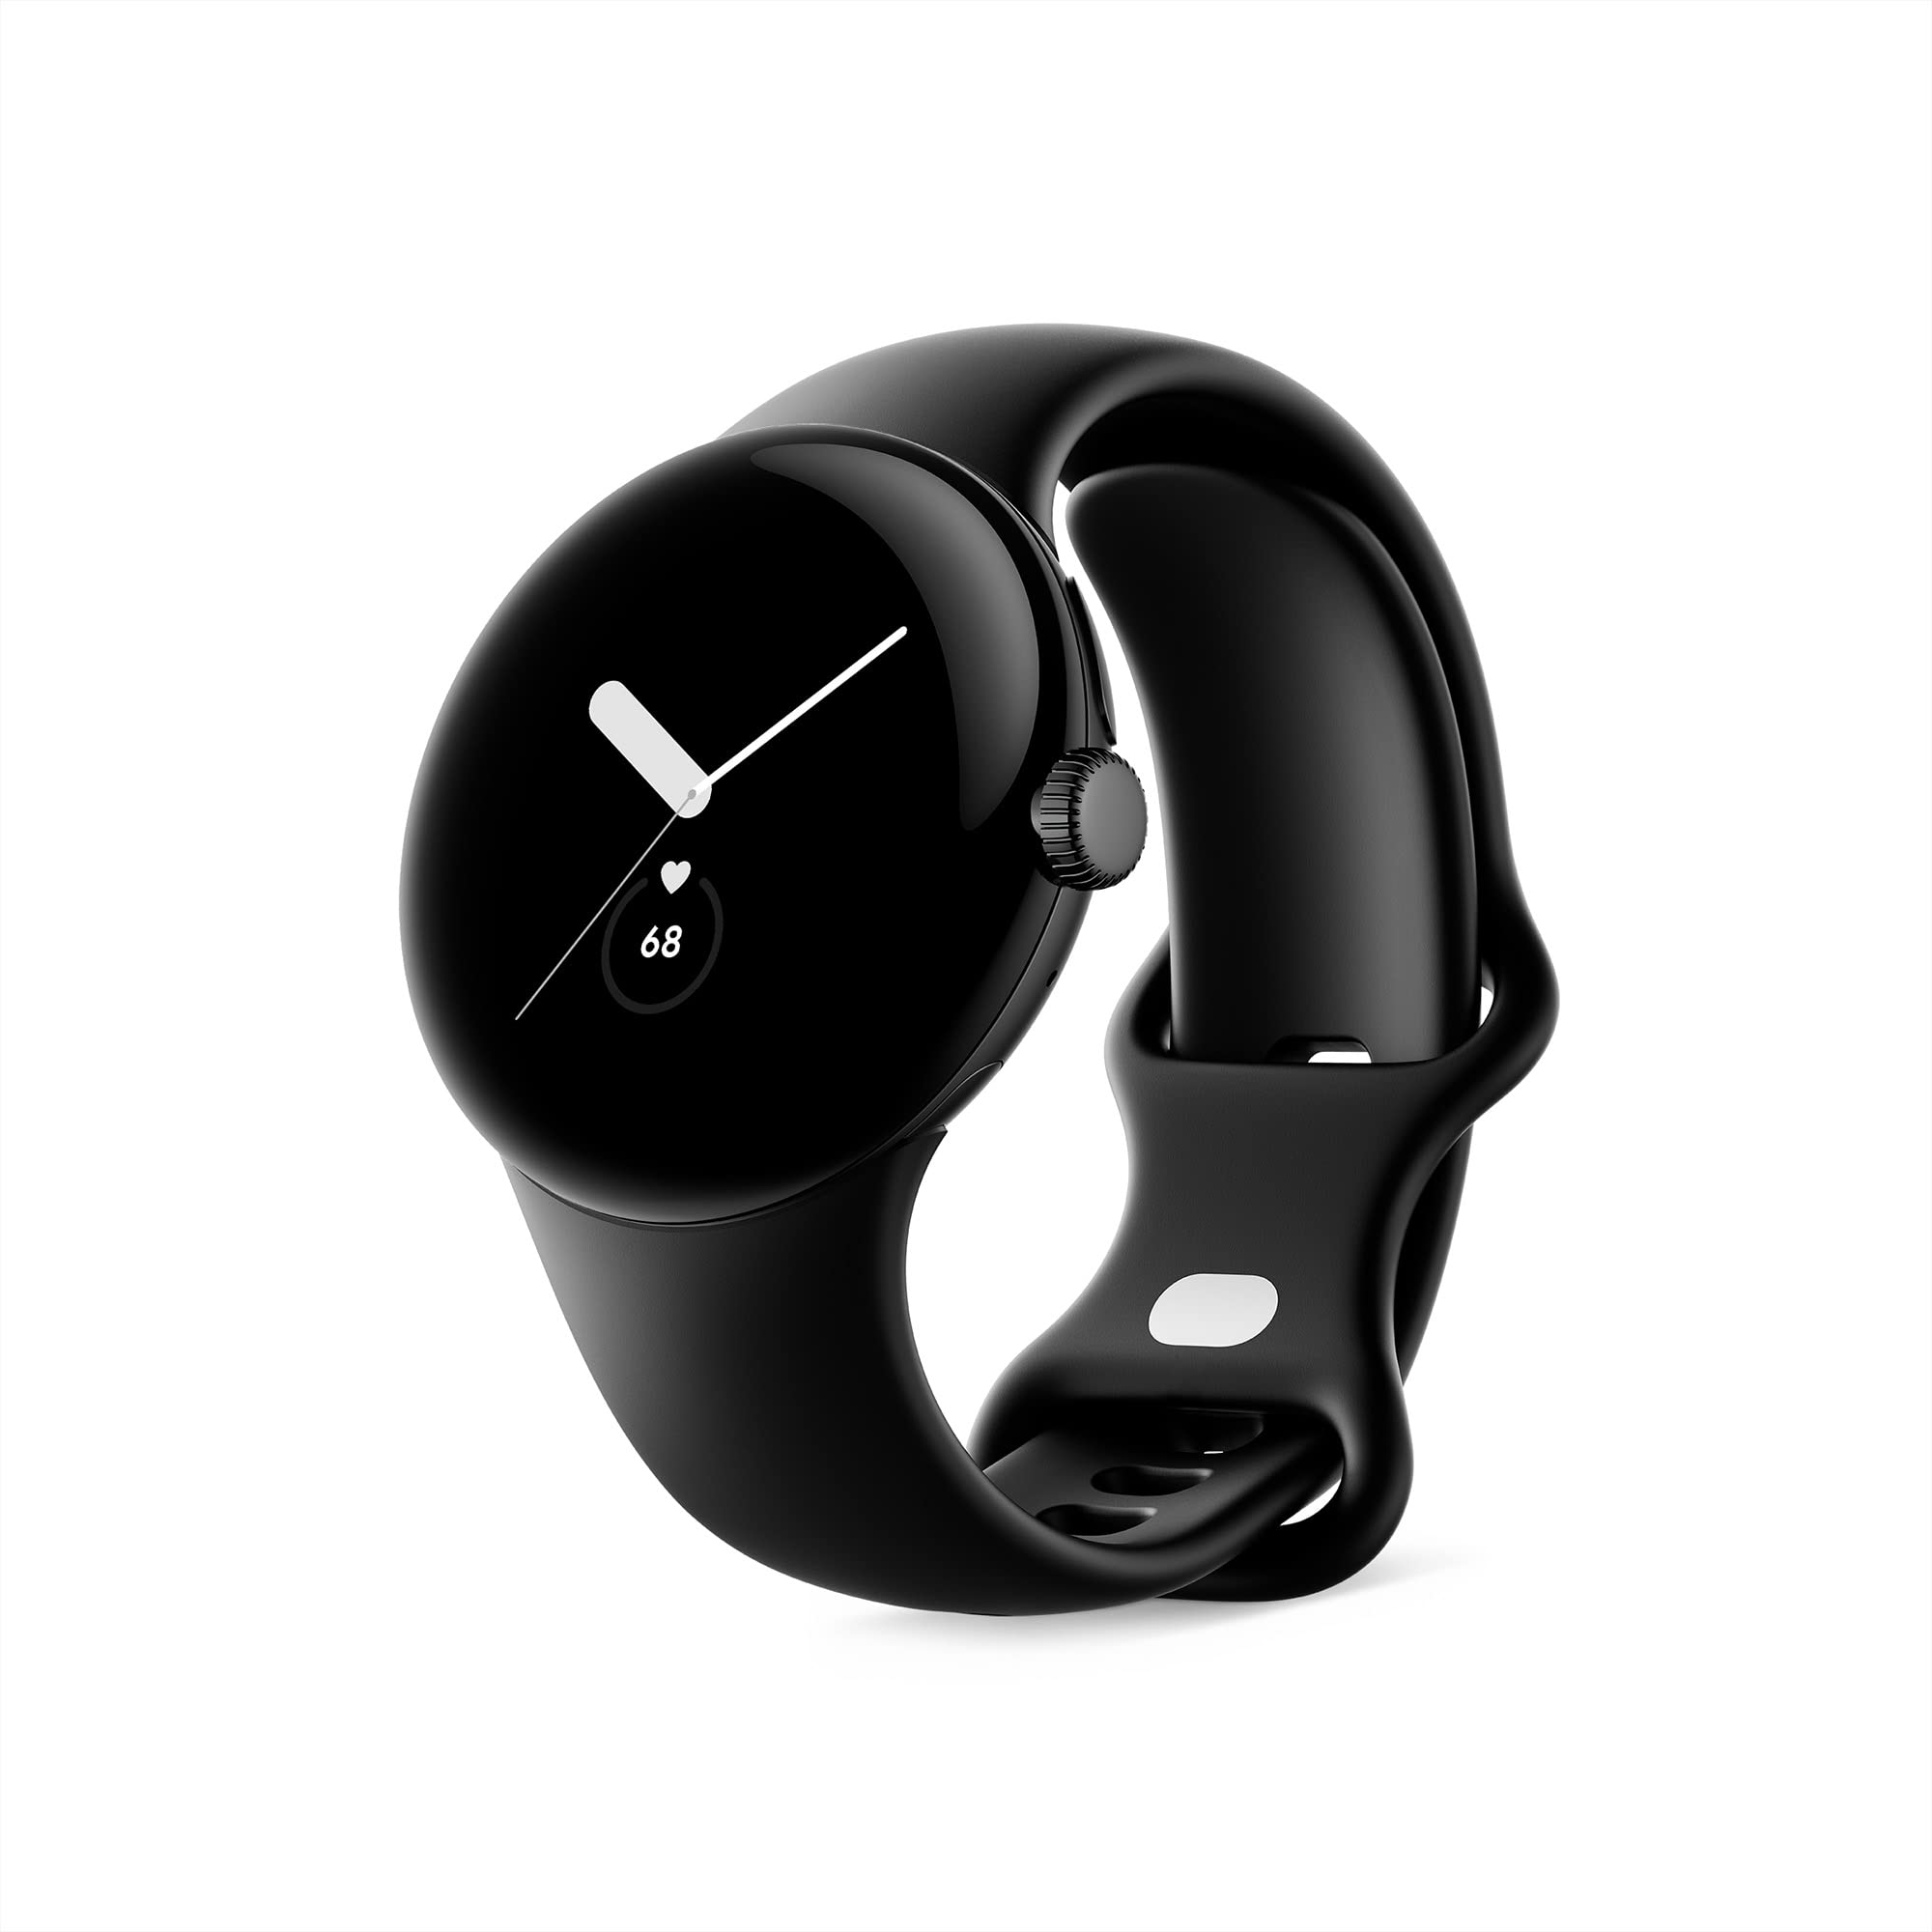 Google Pixel Watch – Android-Smartwatch mit Aktivitätsaufzeichnung – Smartwatch mit Herzfrequenz-Tracker – Edelstahlgehäuse in Matte Black mit Sportarmband in Obsidian, Wifi